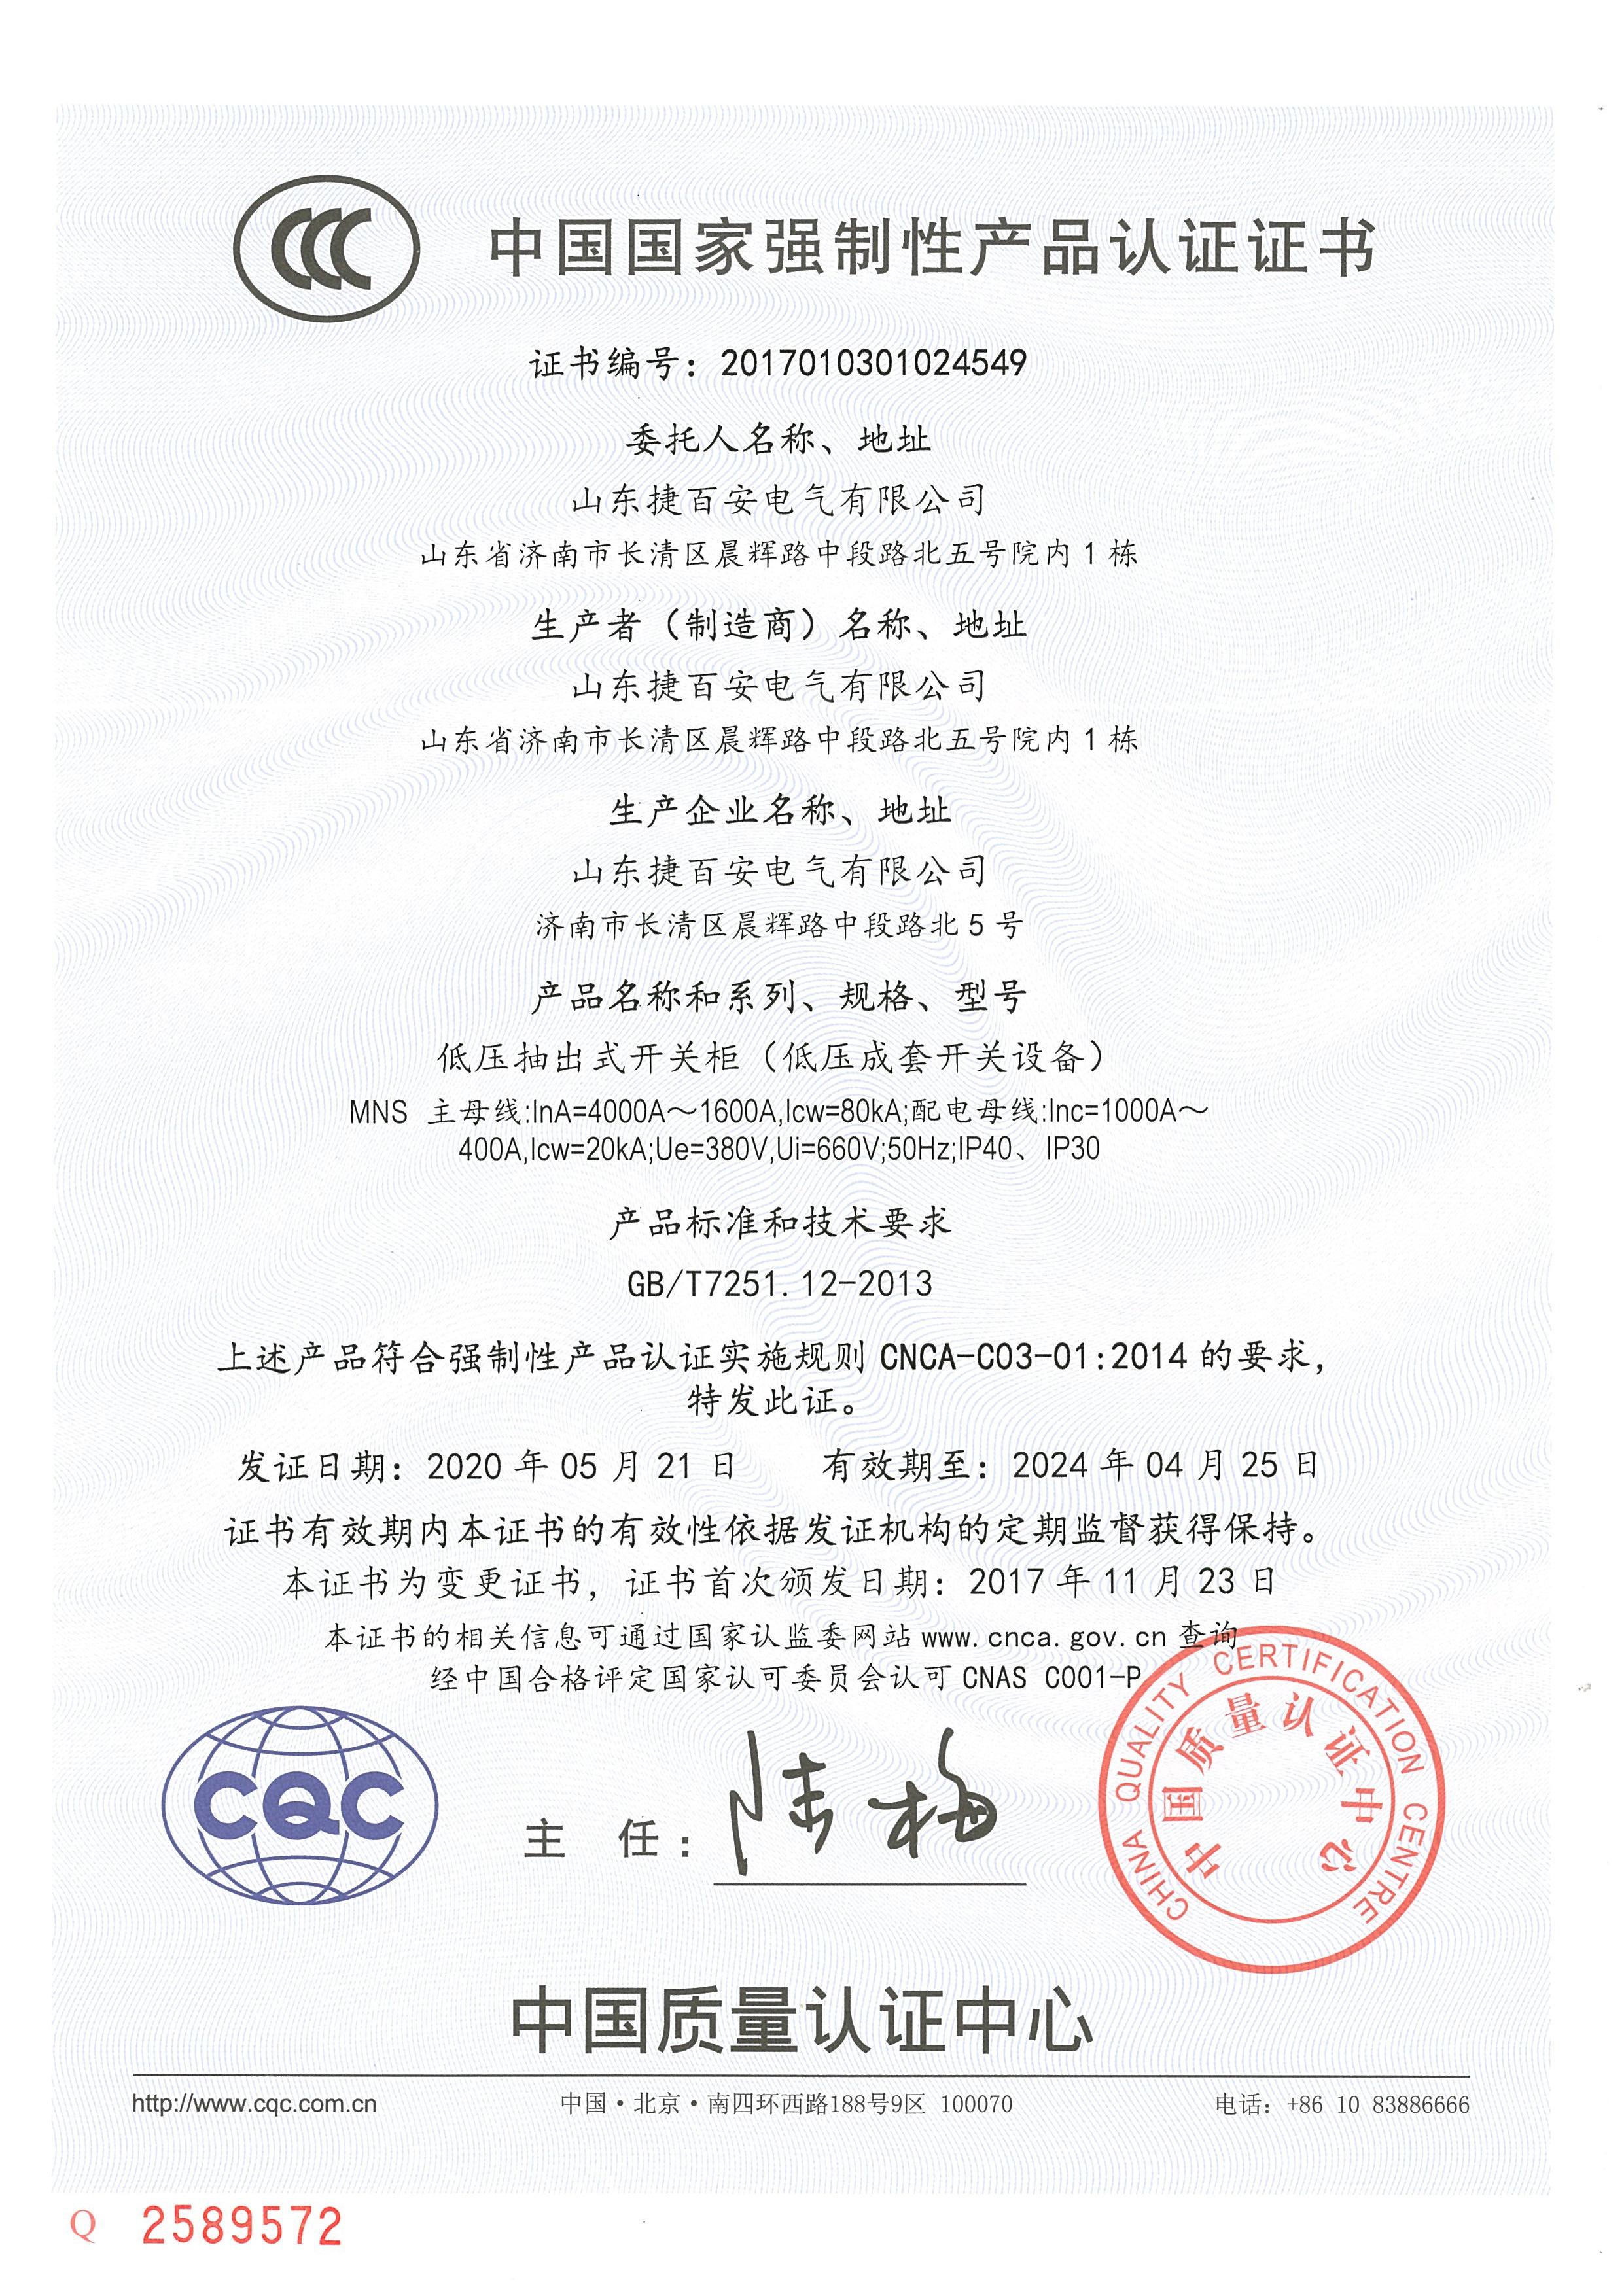 MNS系列CCC认证证书